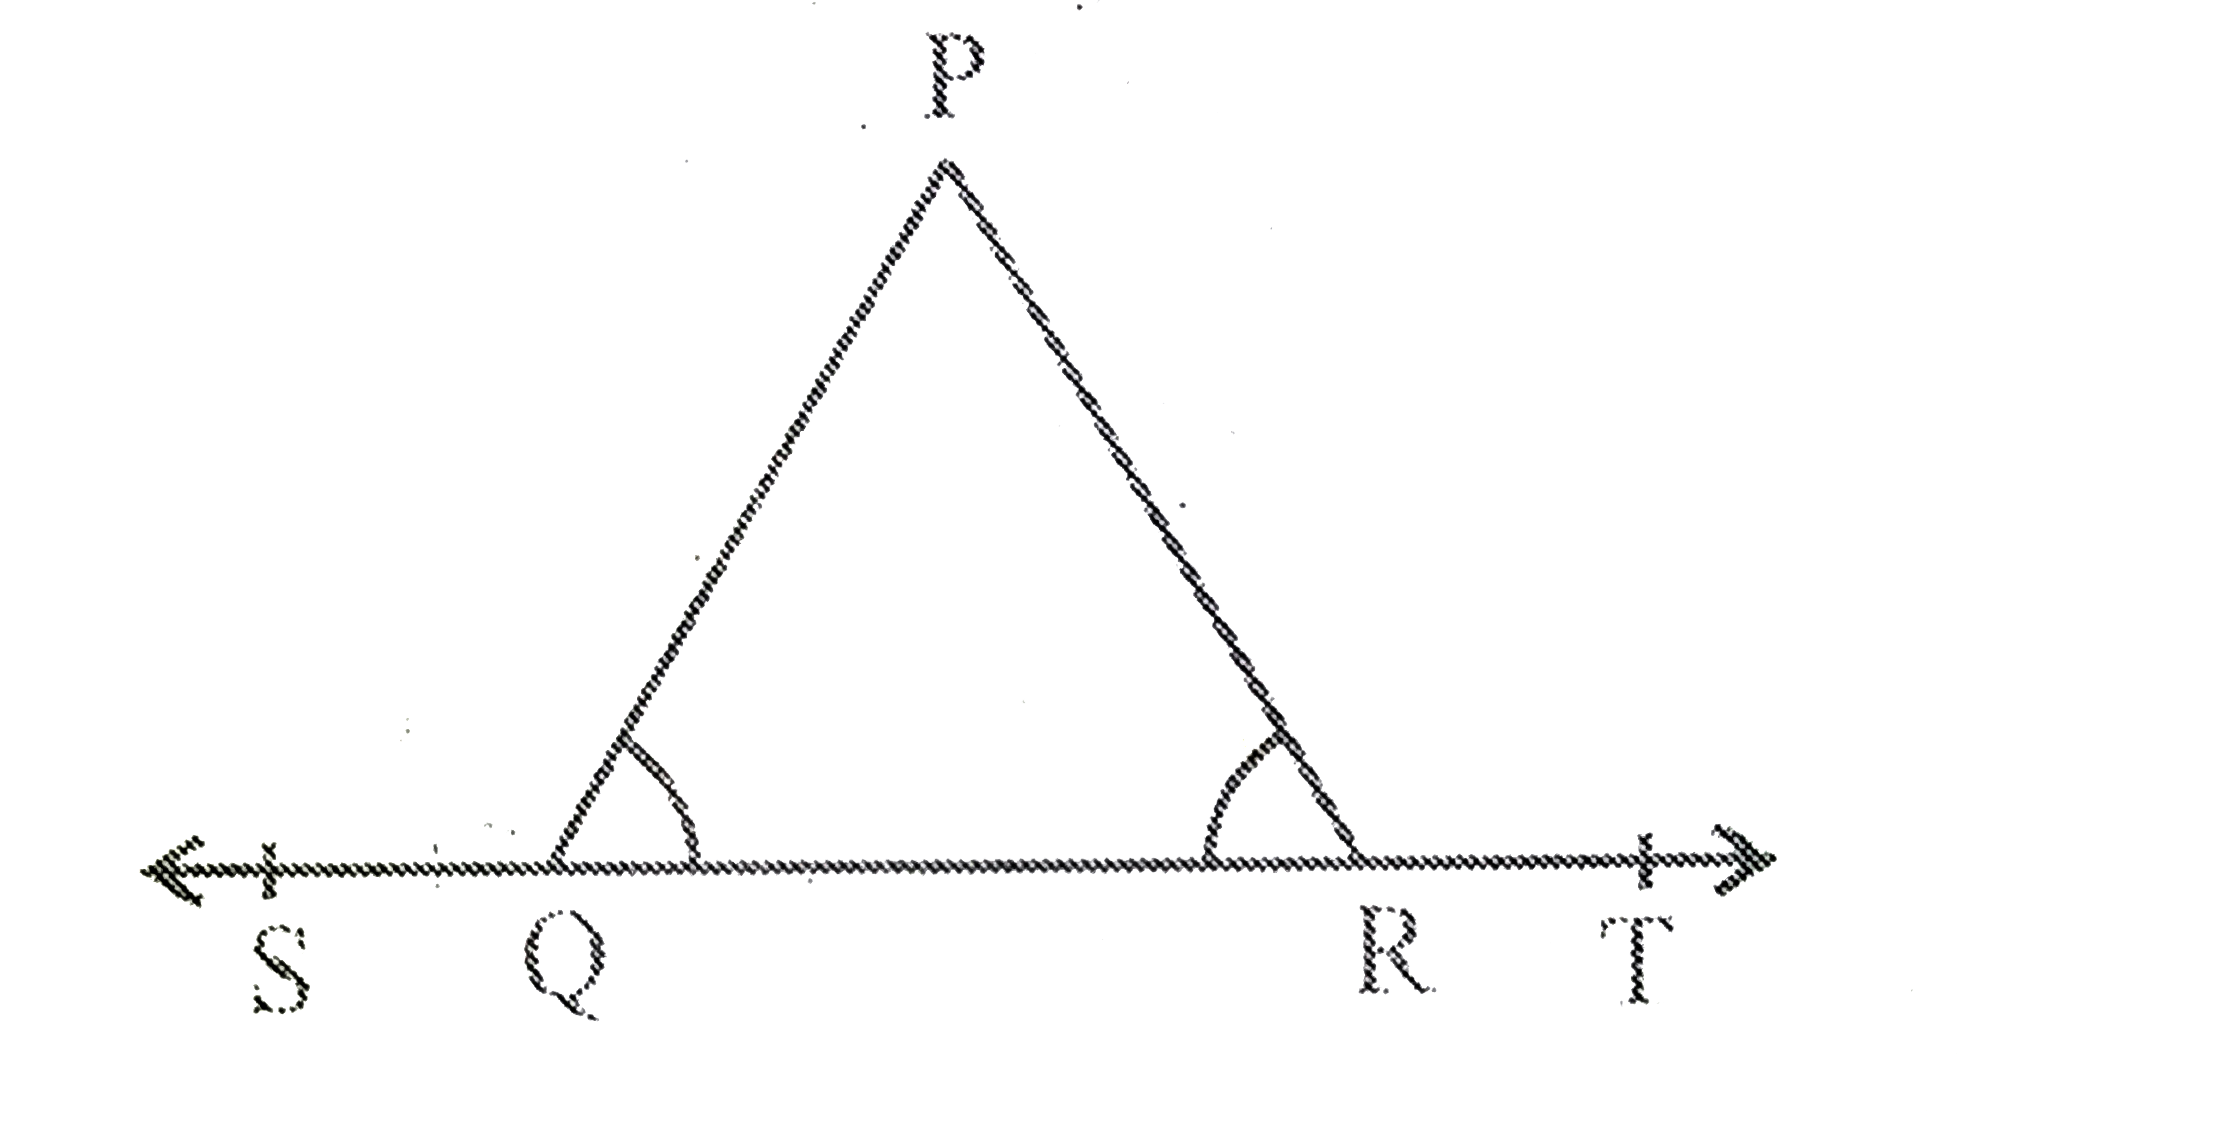 आकृति 6.15  में यदि angle PQR =angle PRQ है, तो सिद्ध कीजिये की angle PQS=angle PRT  है ।